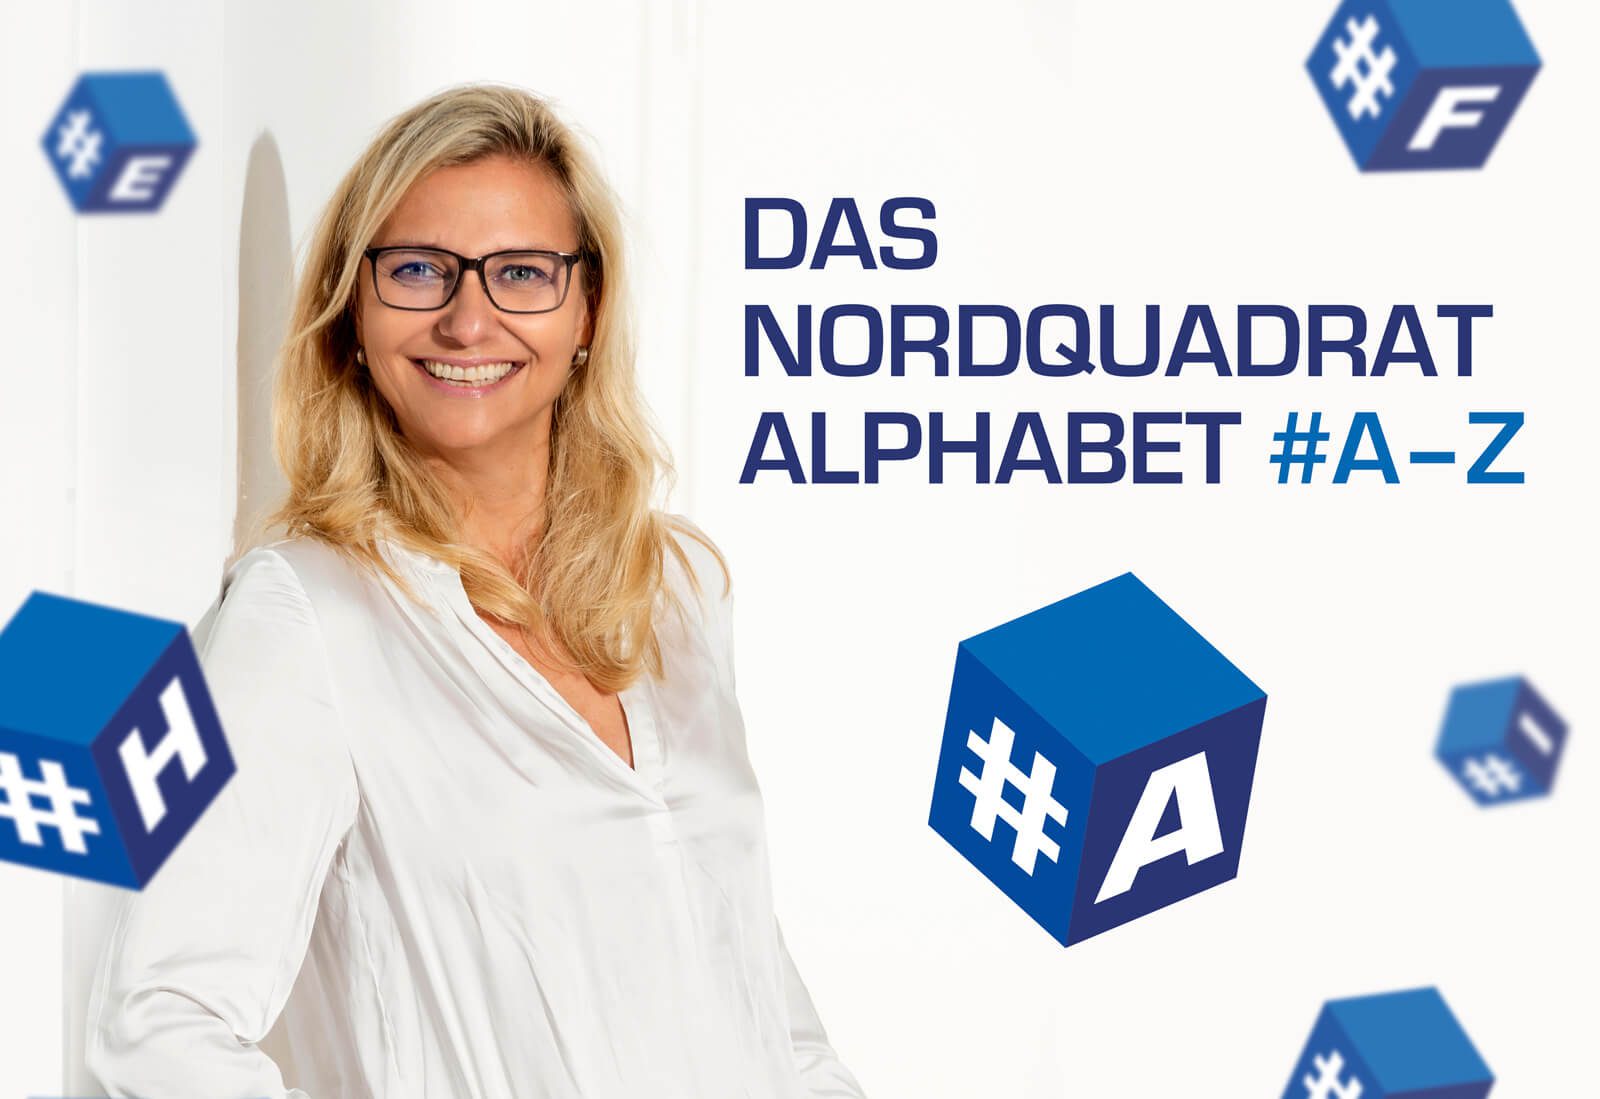 Nordquadrat PR + Marketing - Claudia Gabbert - News - Das Nordquadrat Alphabet